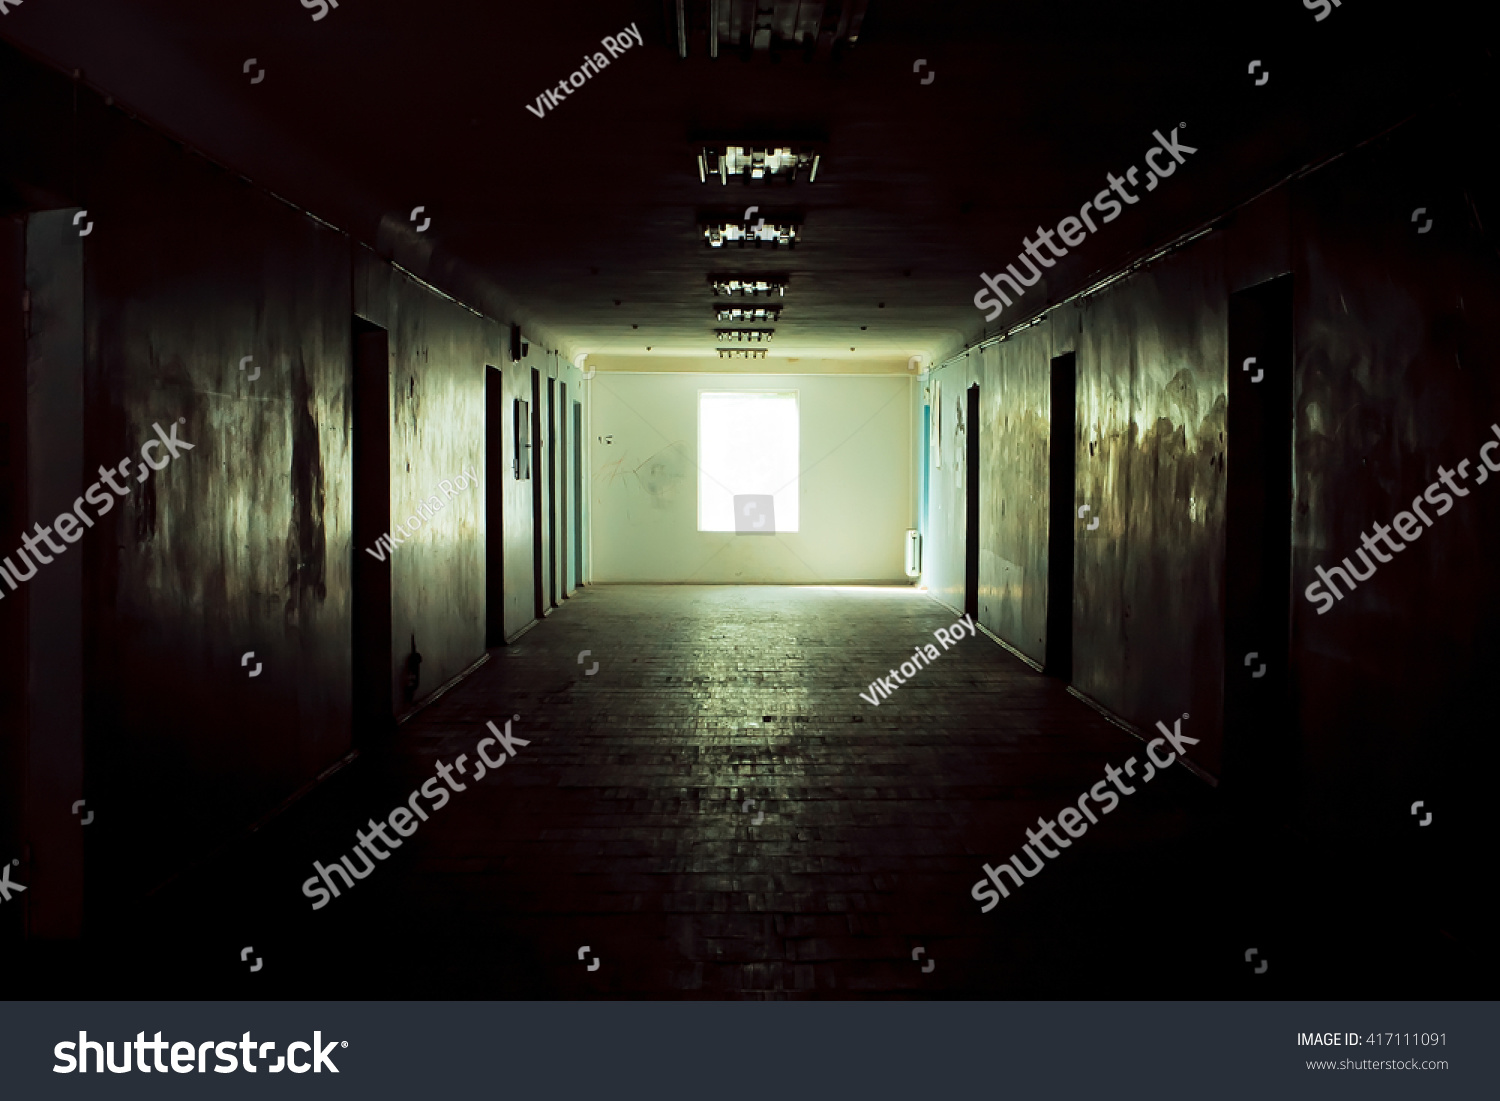 Dark corridor with cabinet doors and window light #417111091